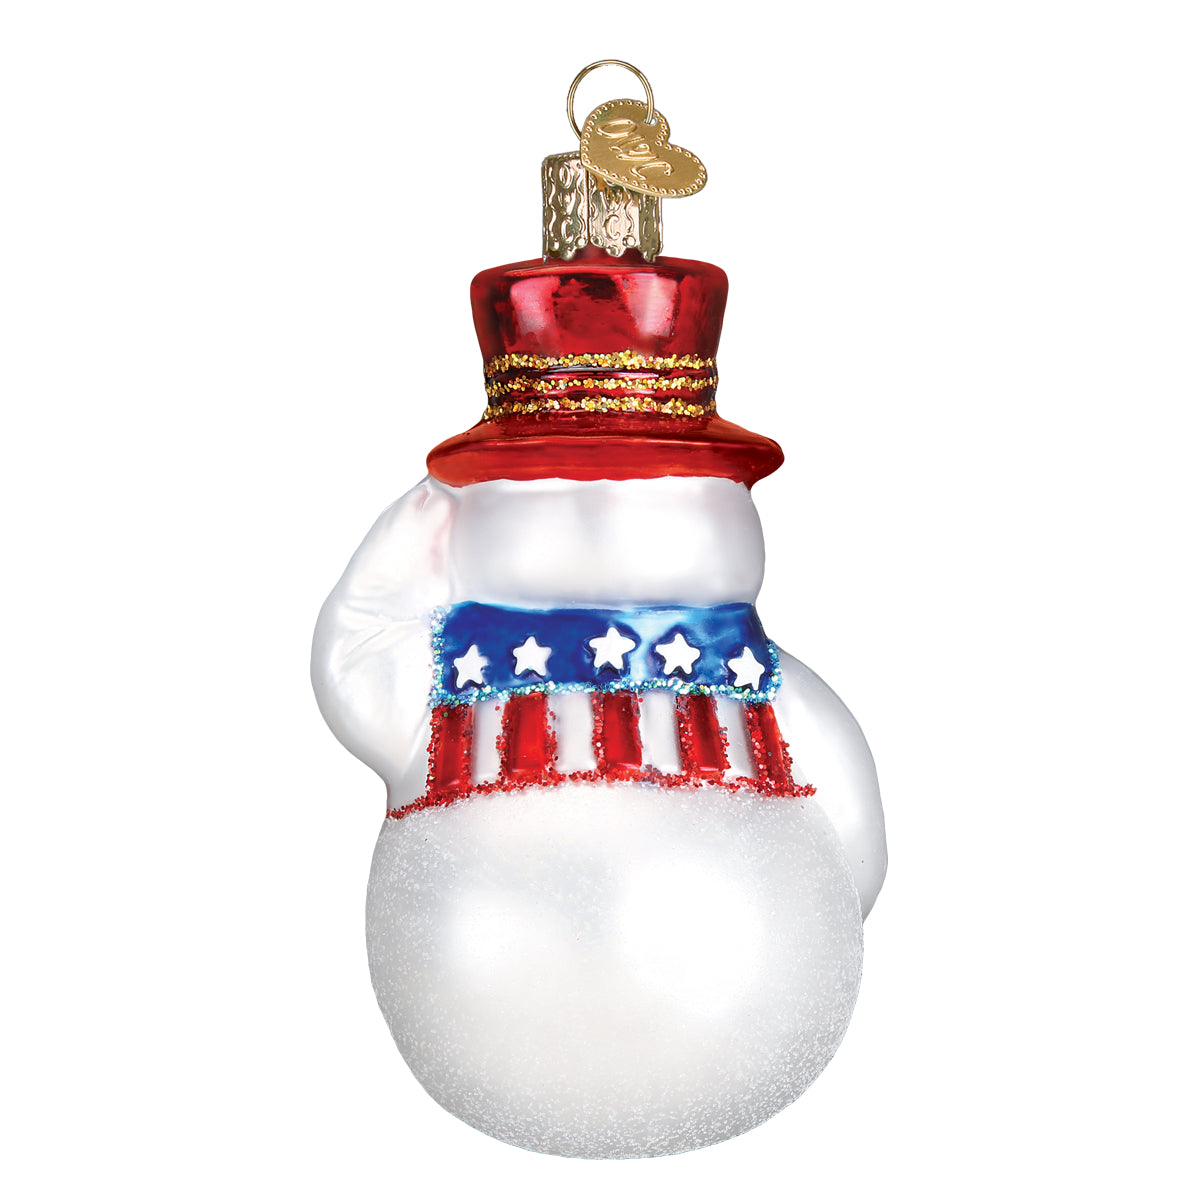 Patriotic Snowman Ornament